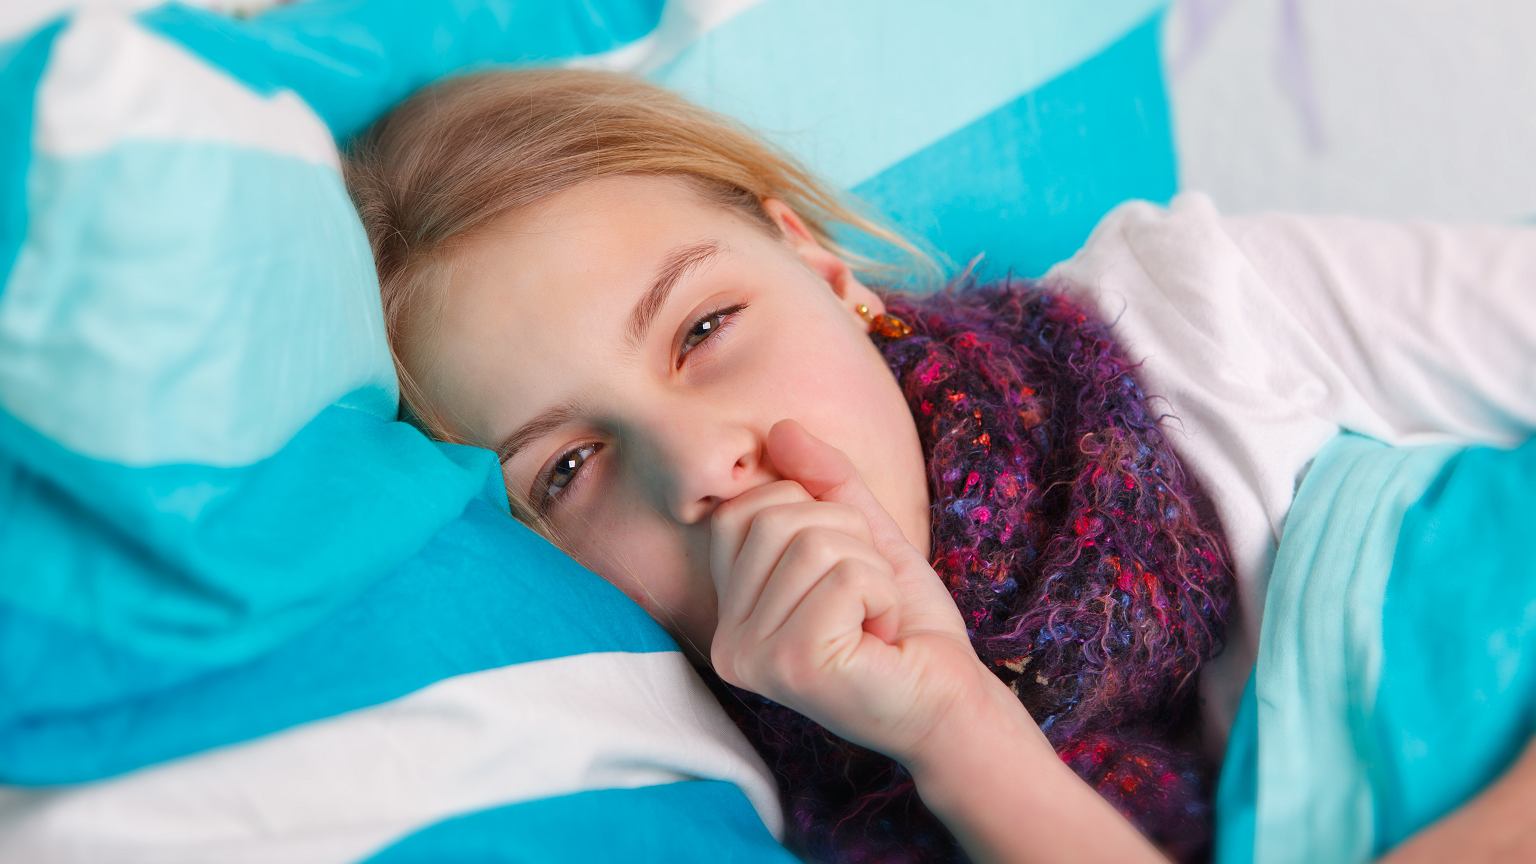 Влажный кашель у ребенка - это кошмар каждого родителя. Узнайте, какие есть средства защиты